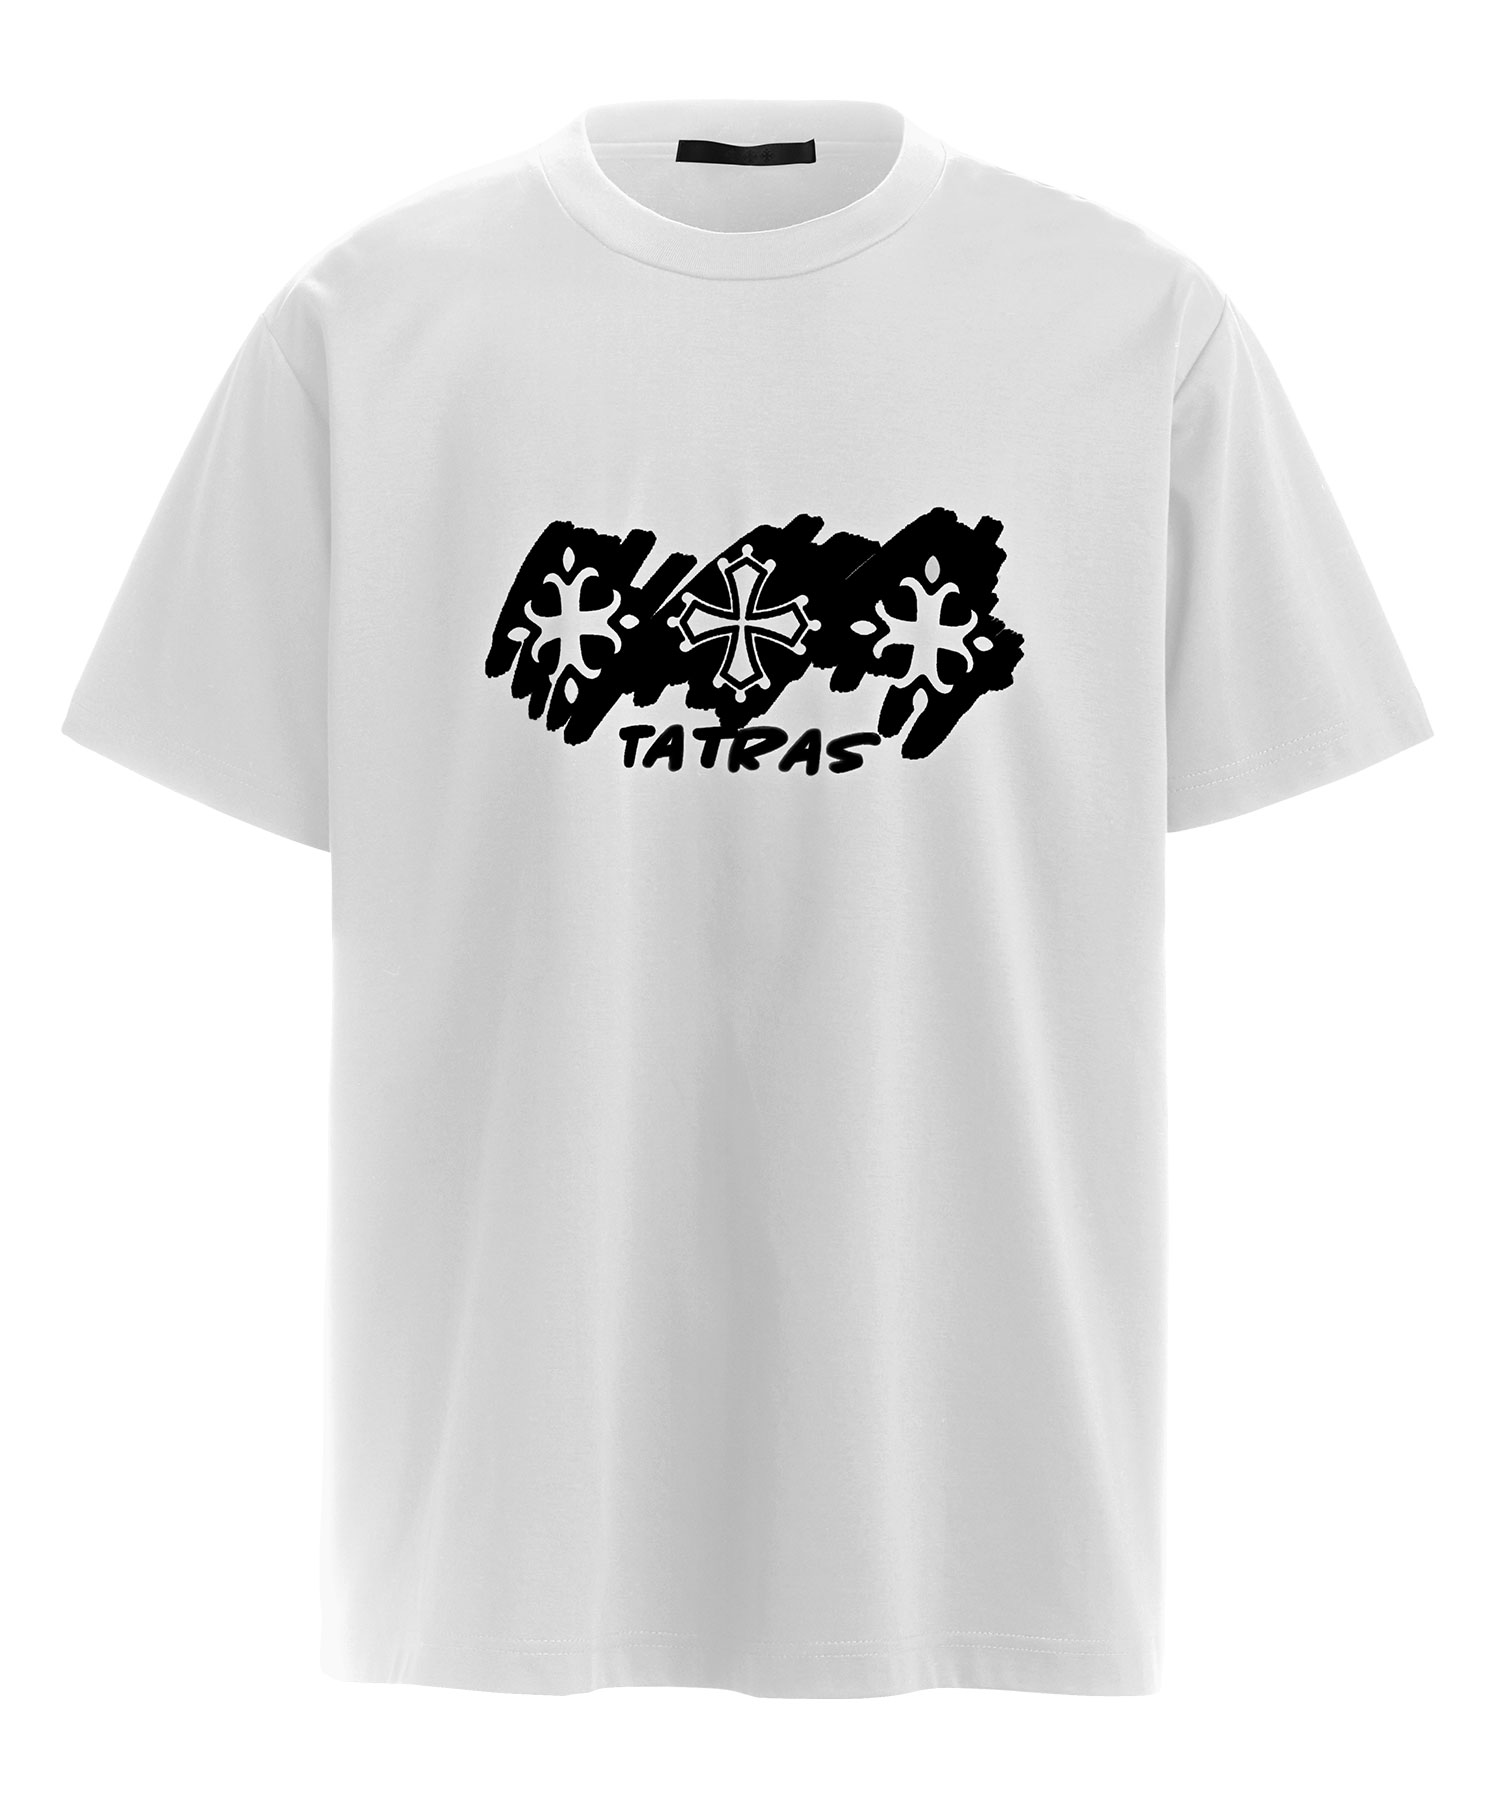 【公式】TATRAS (タトラス) OSTOMO オストモ WHITE/10 サイズ:01,02,03,04 Tシャツ・カットソー メンズ